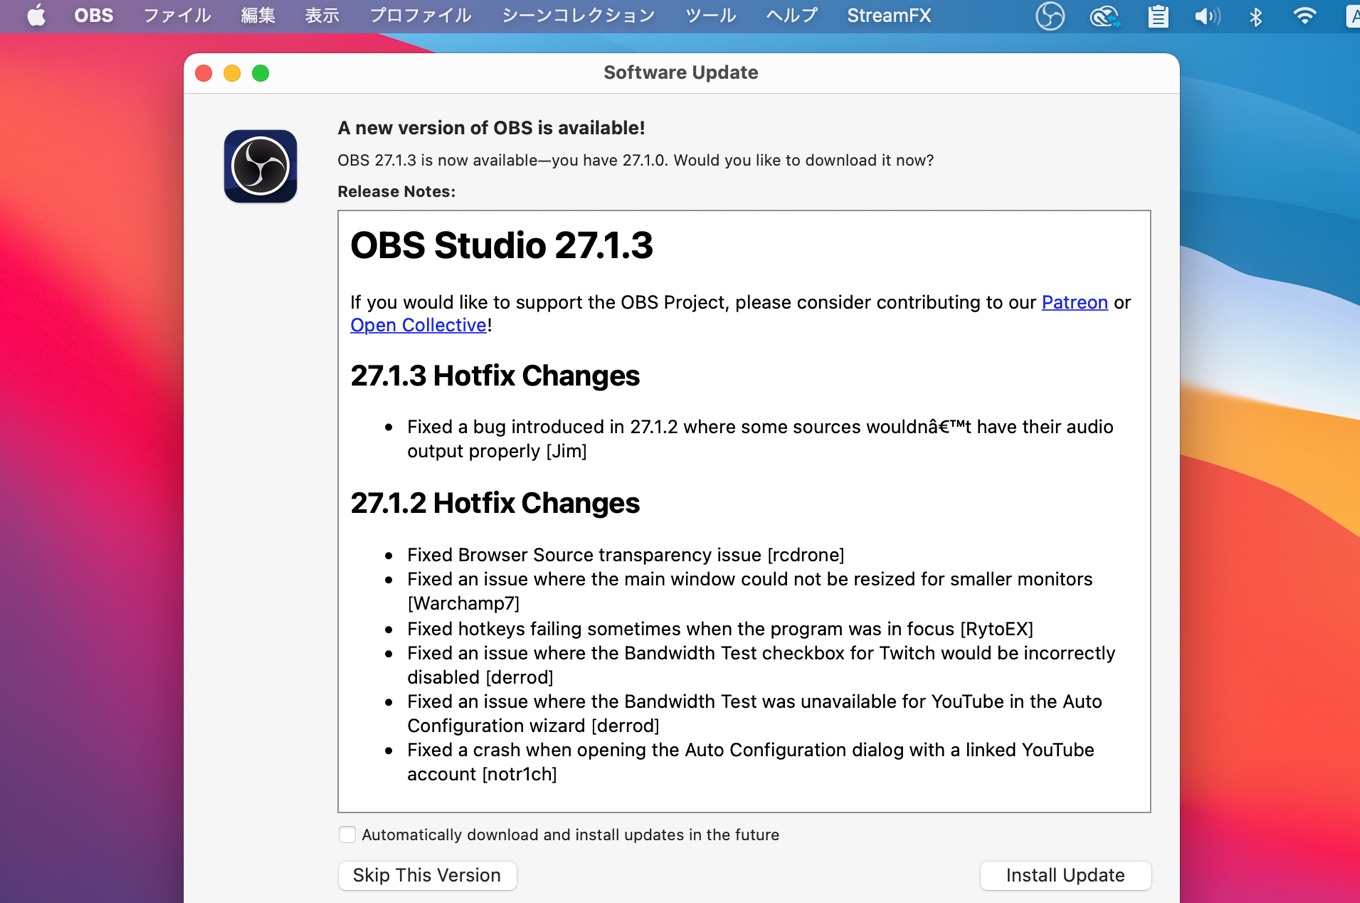 OBS Studio 27.1.3 Hotfix Changes